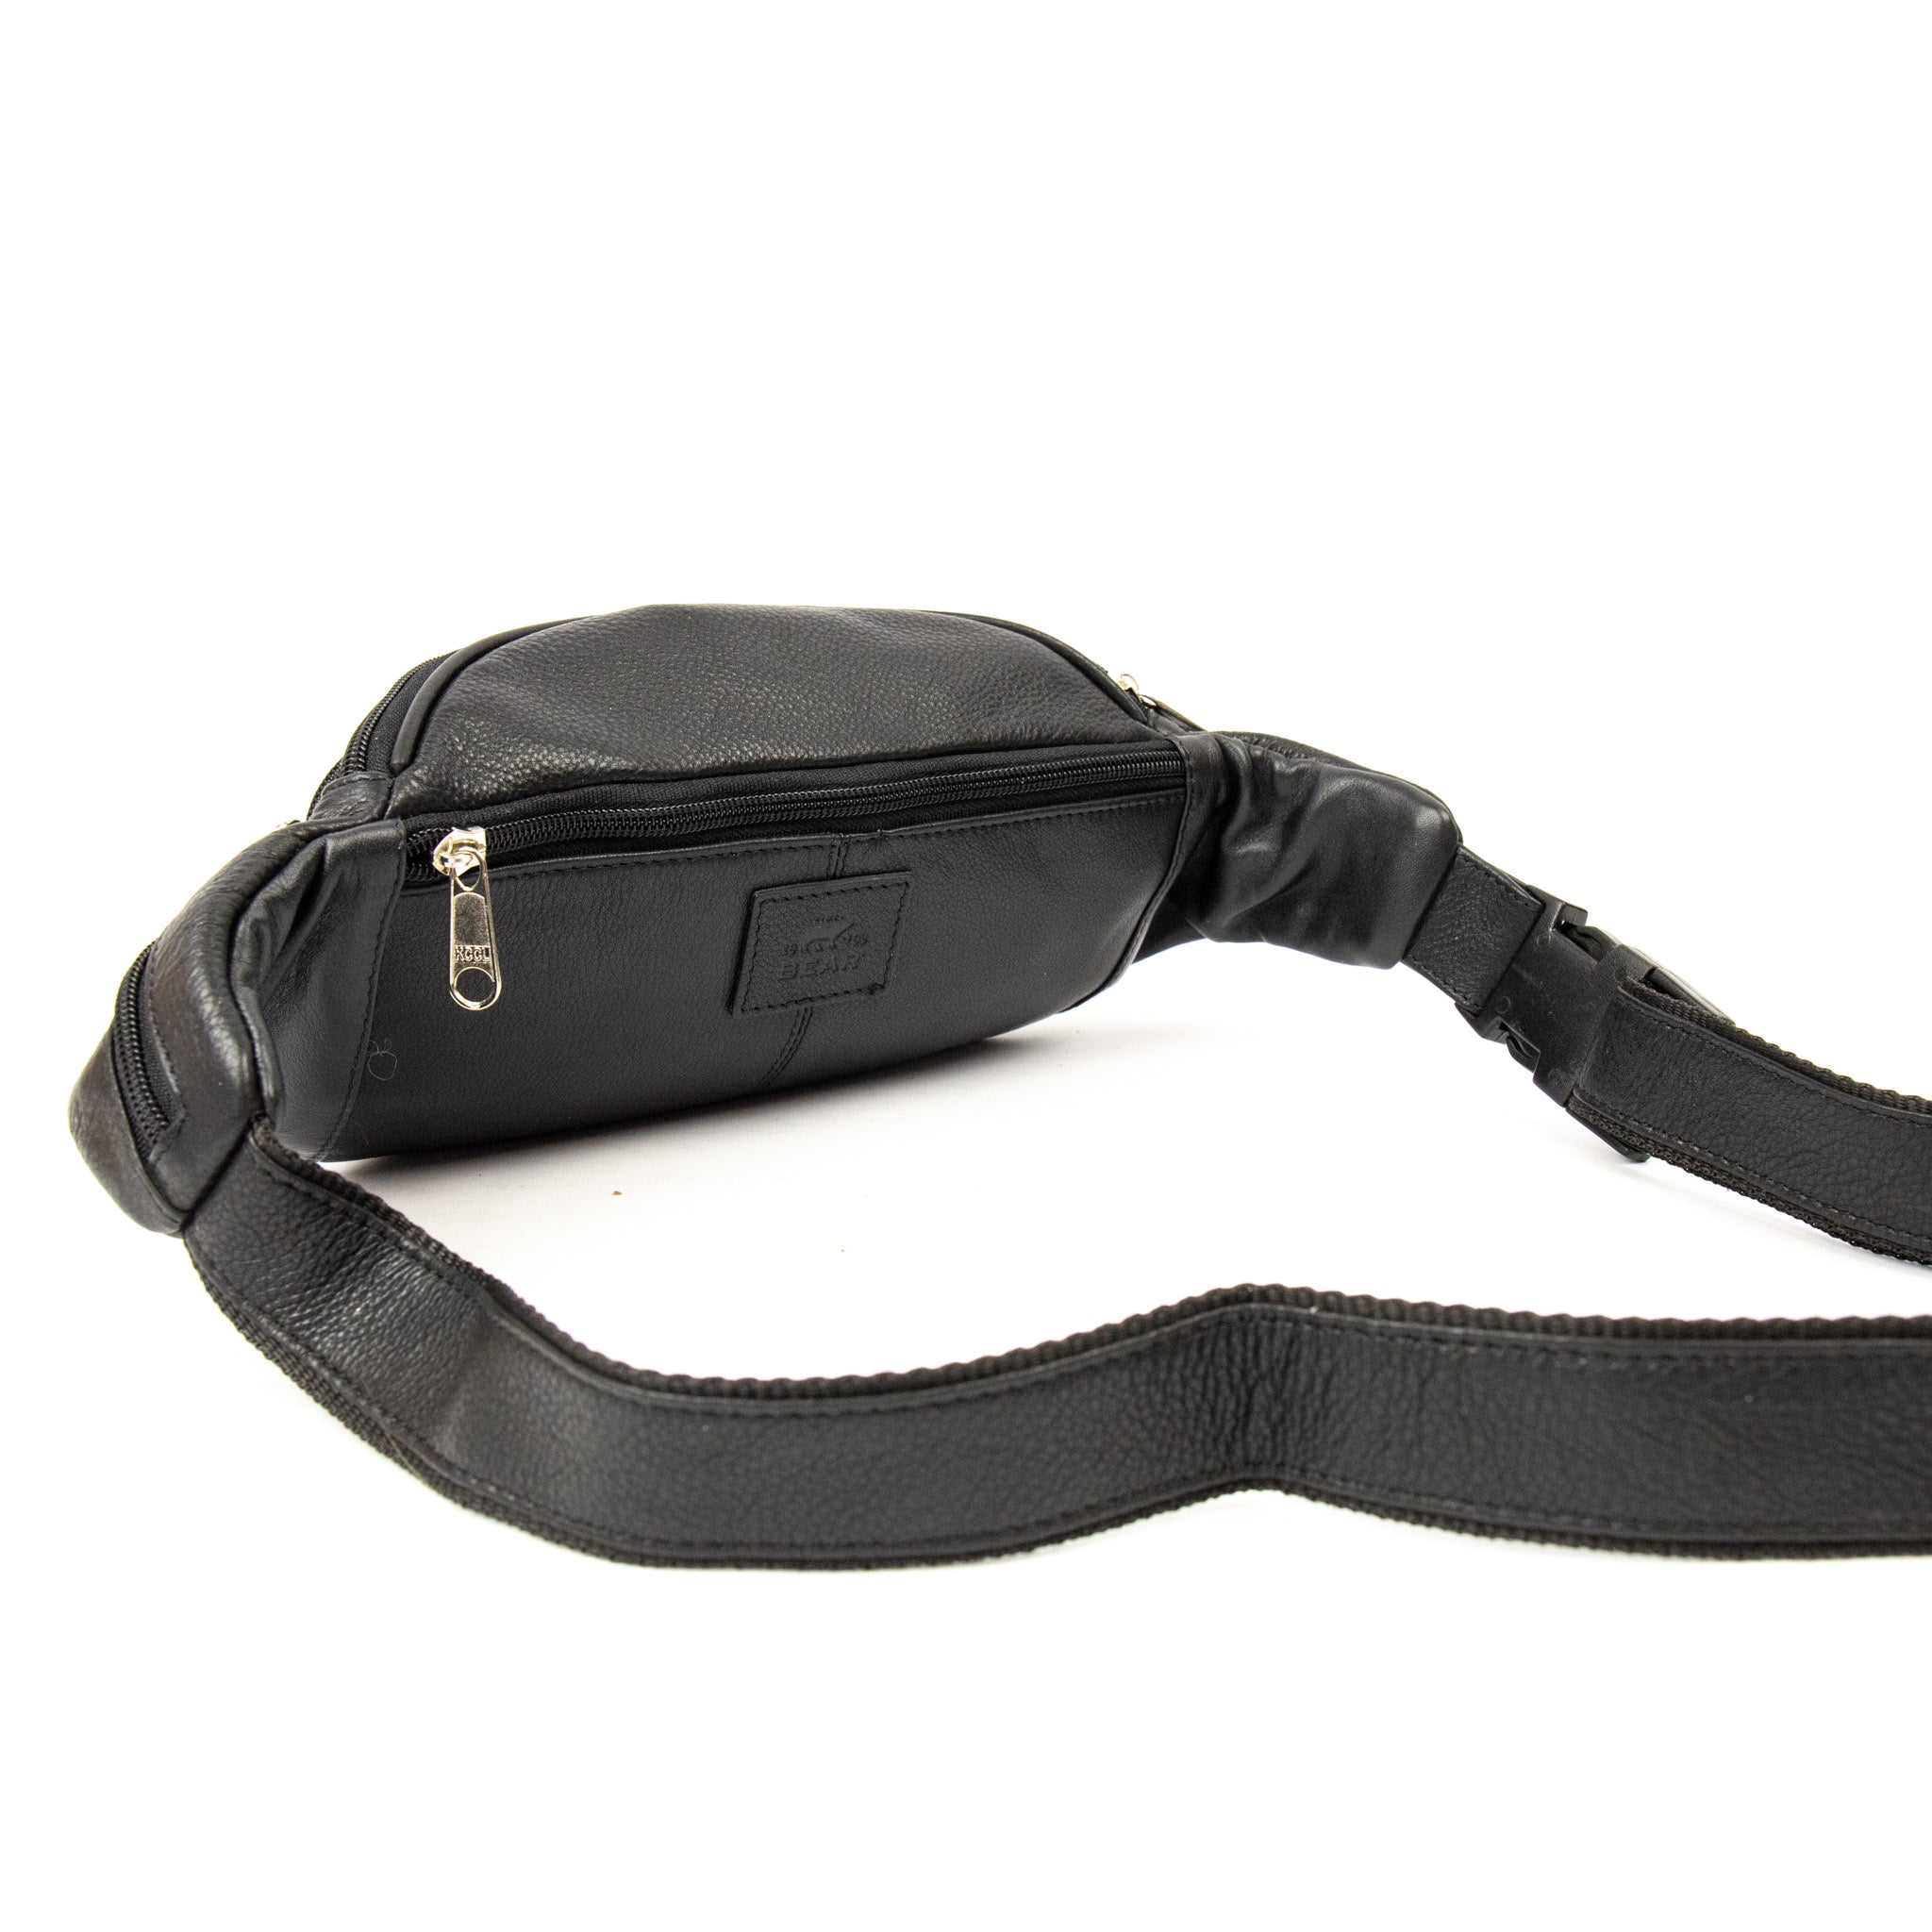 Belt bag 'Manuel' black - B 32887